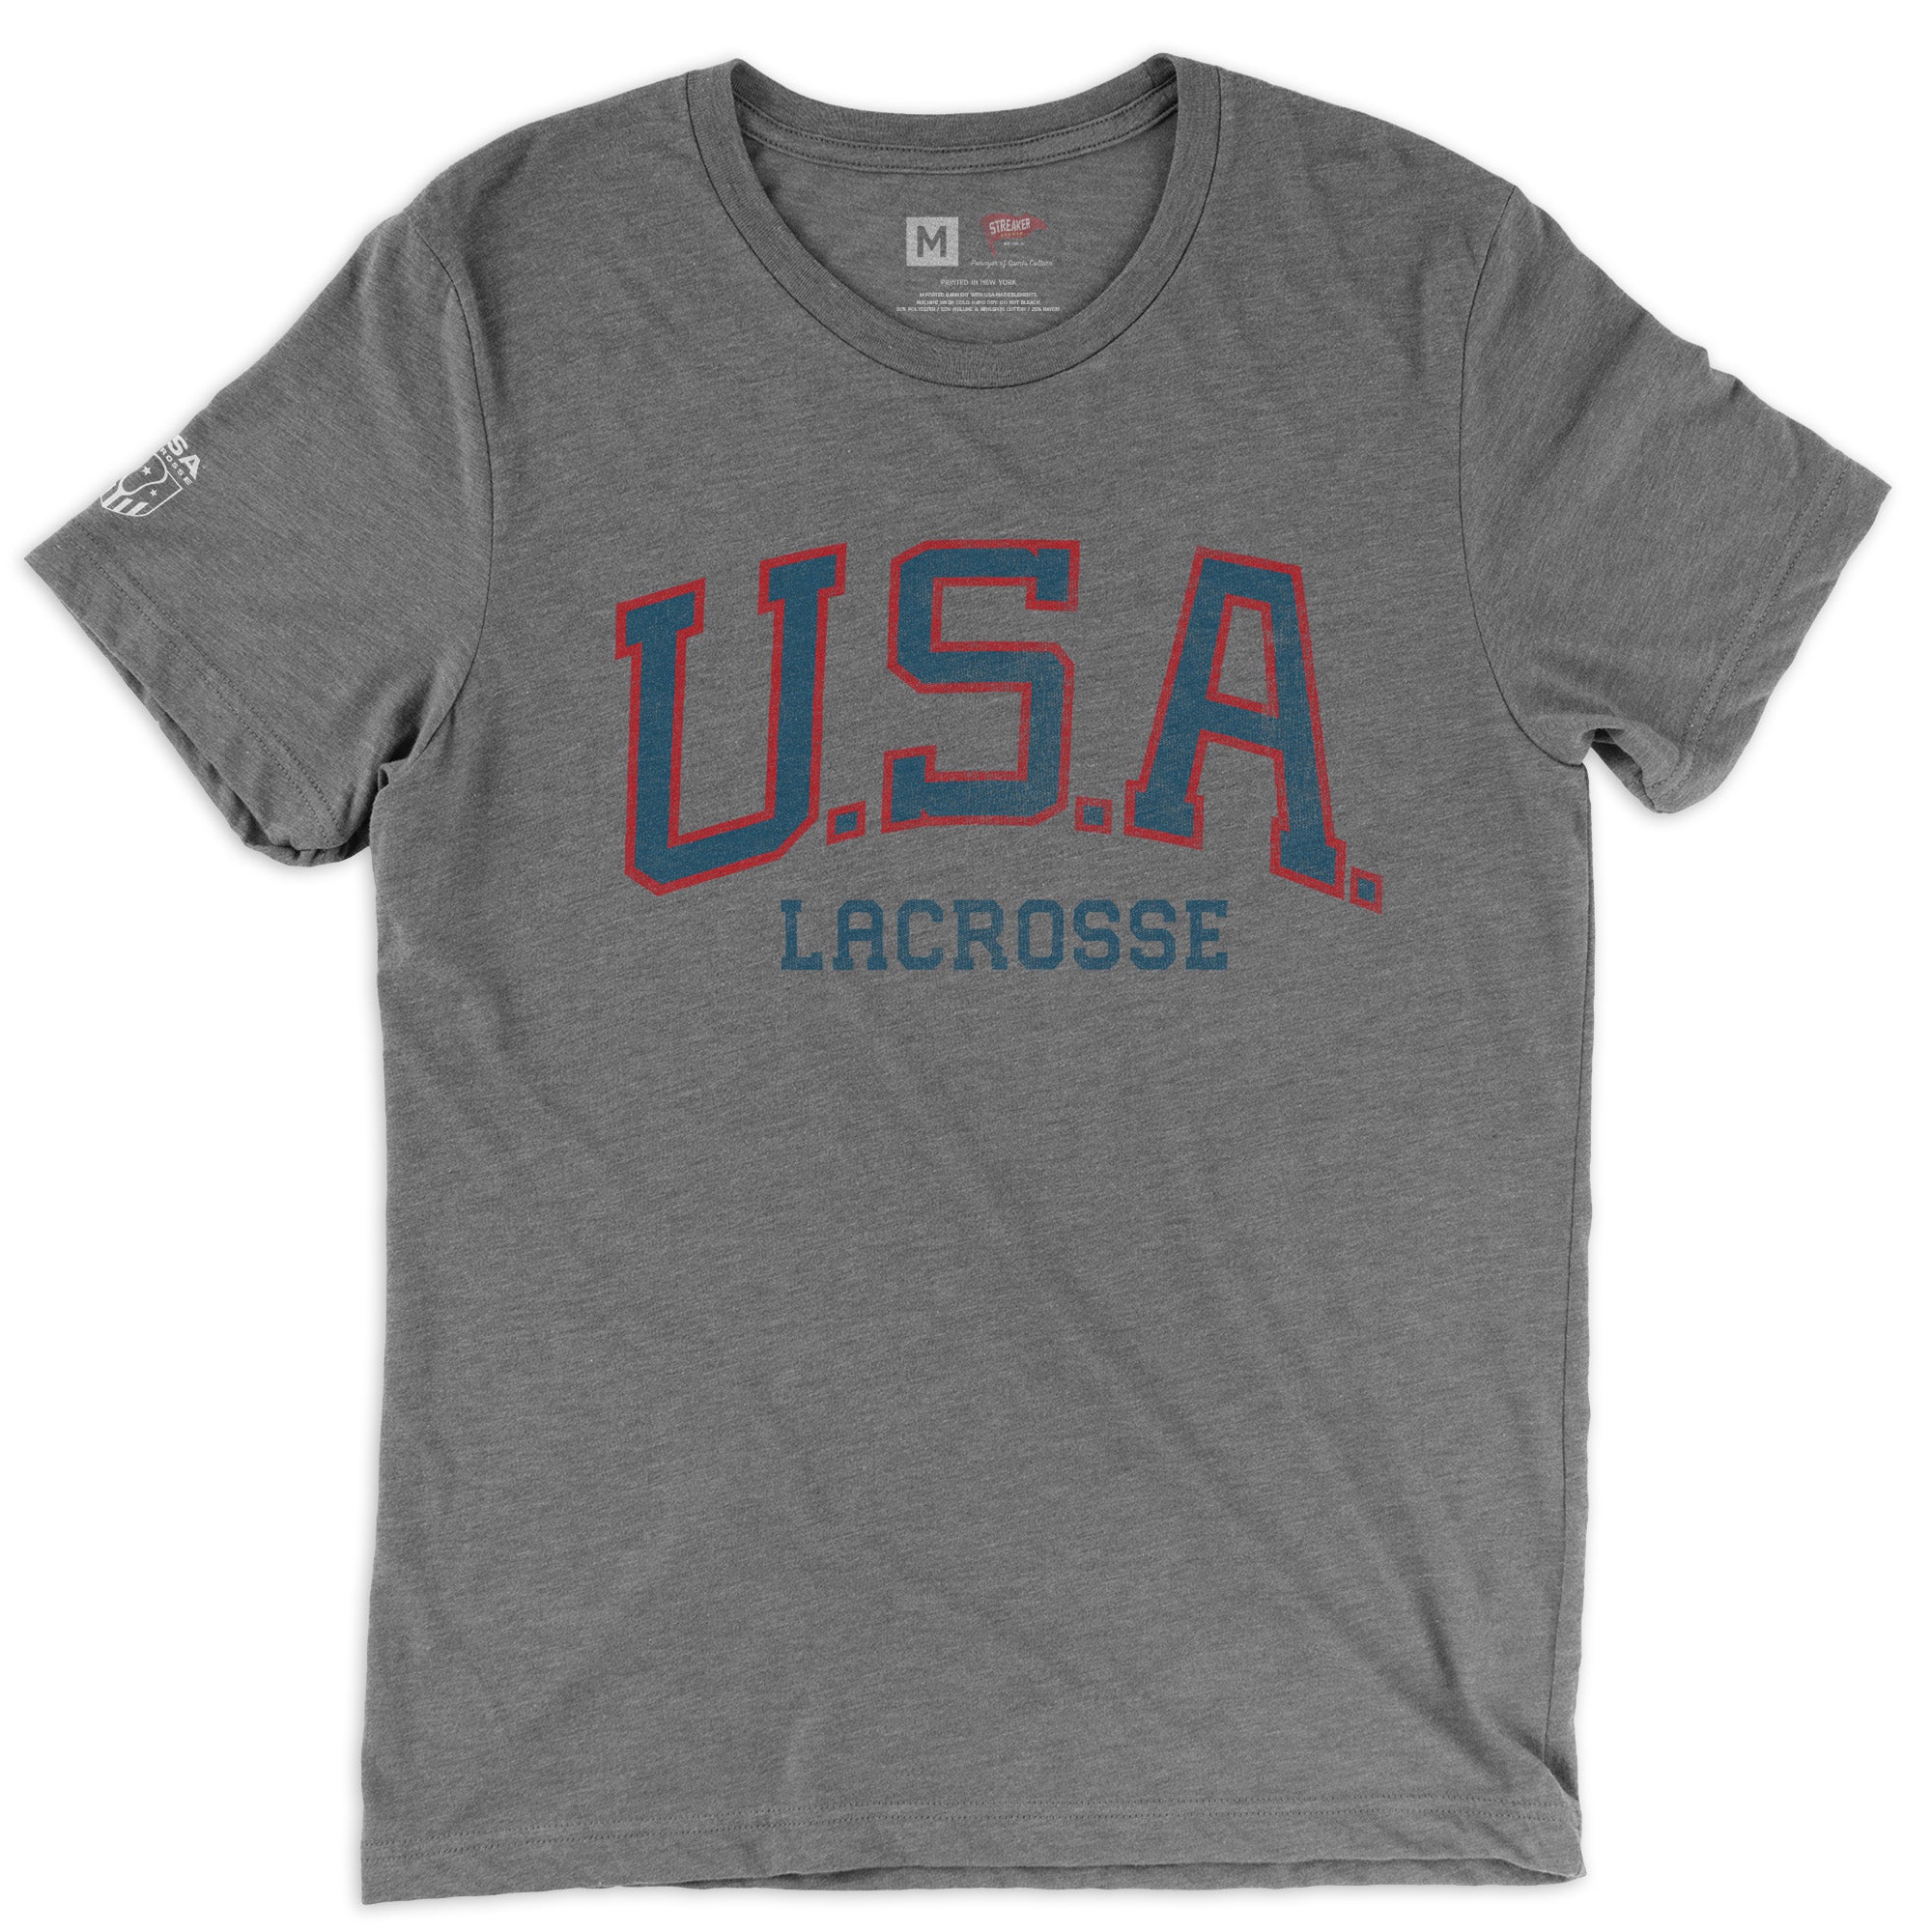 USA Lacrosse Locker Room Tee